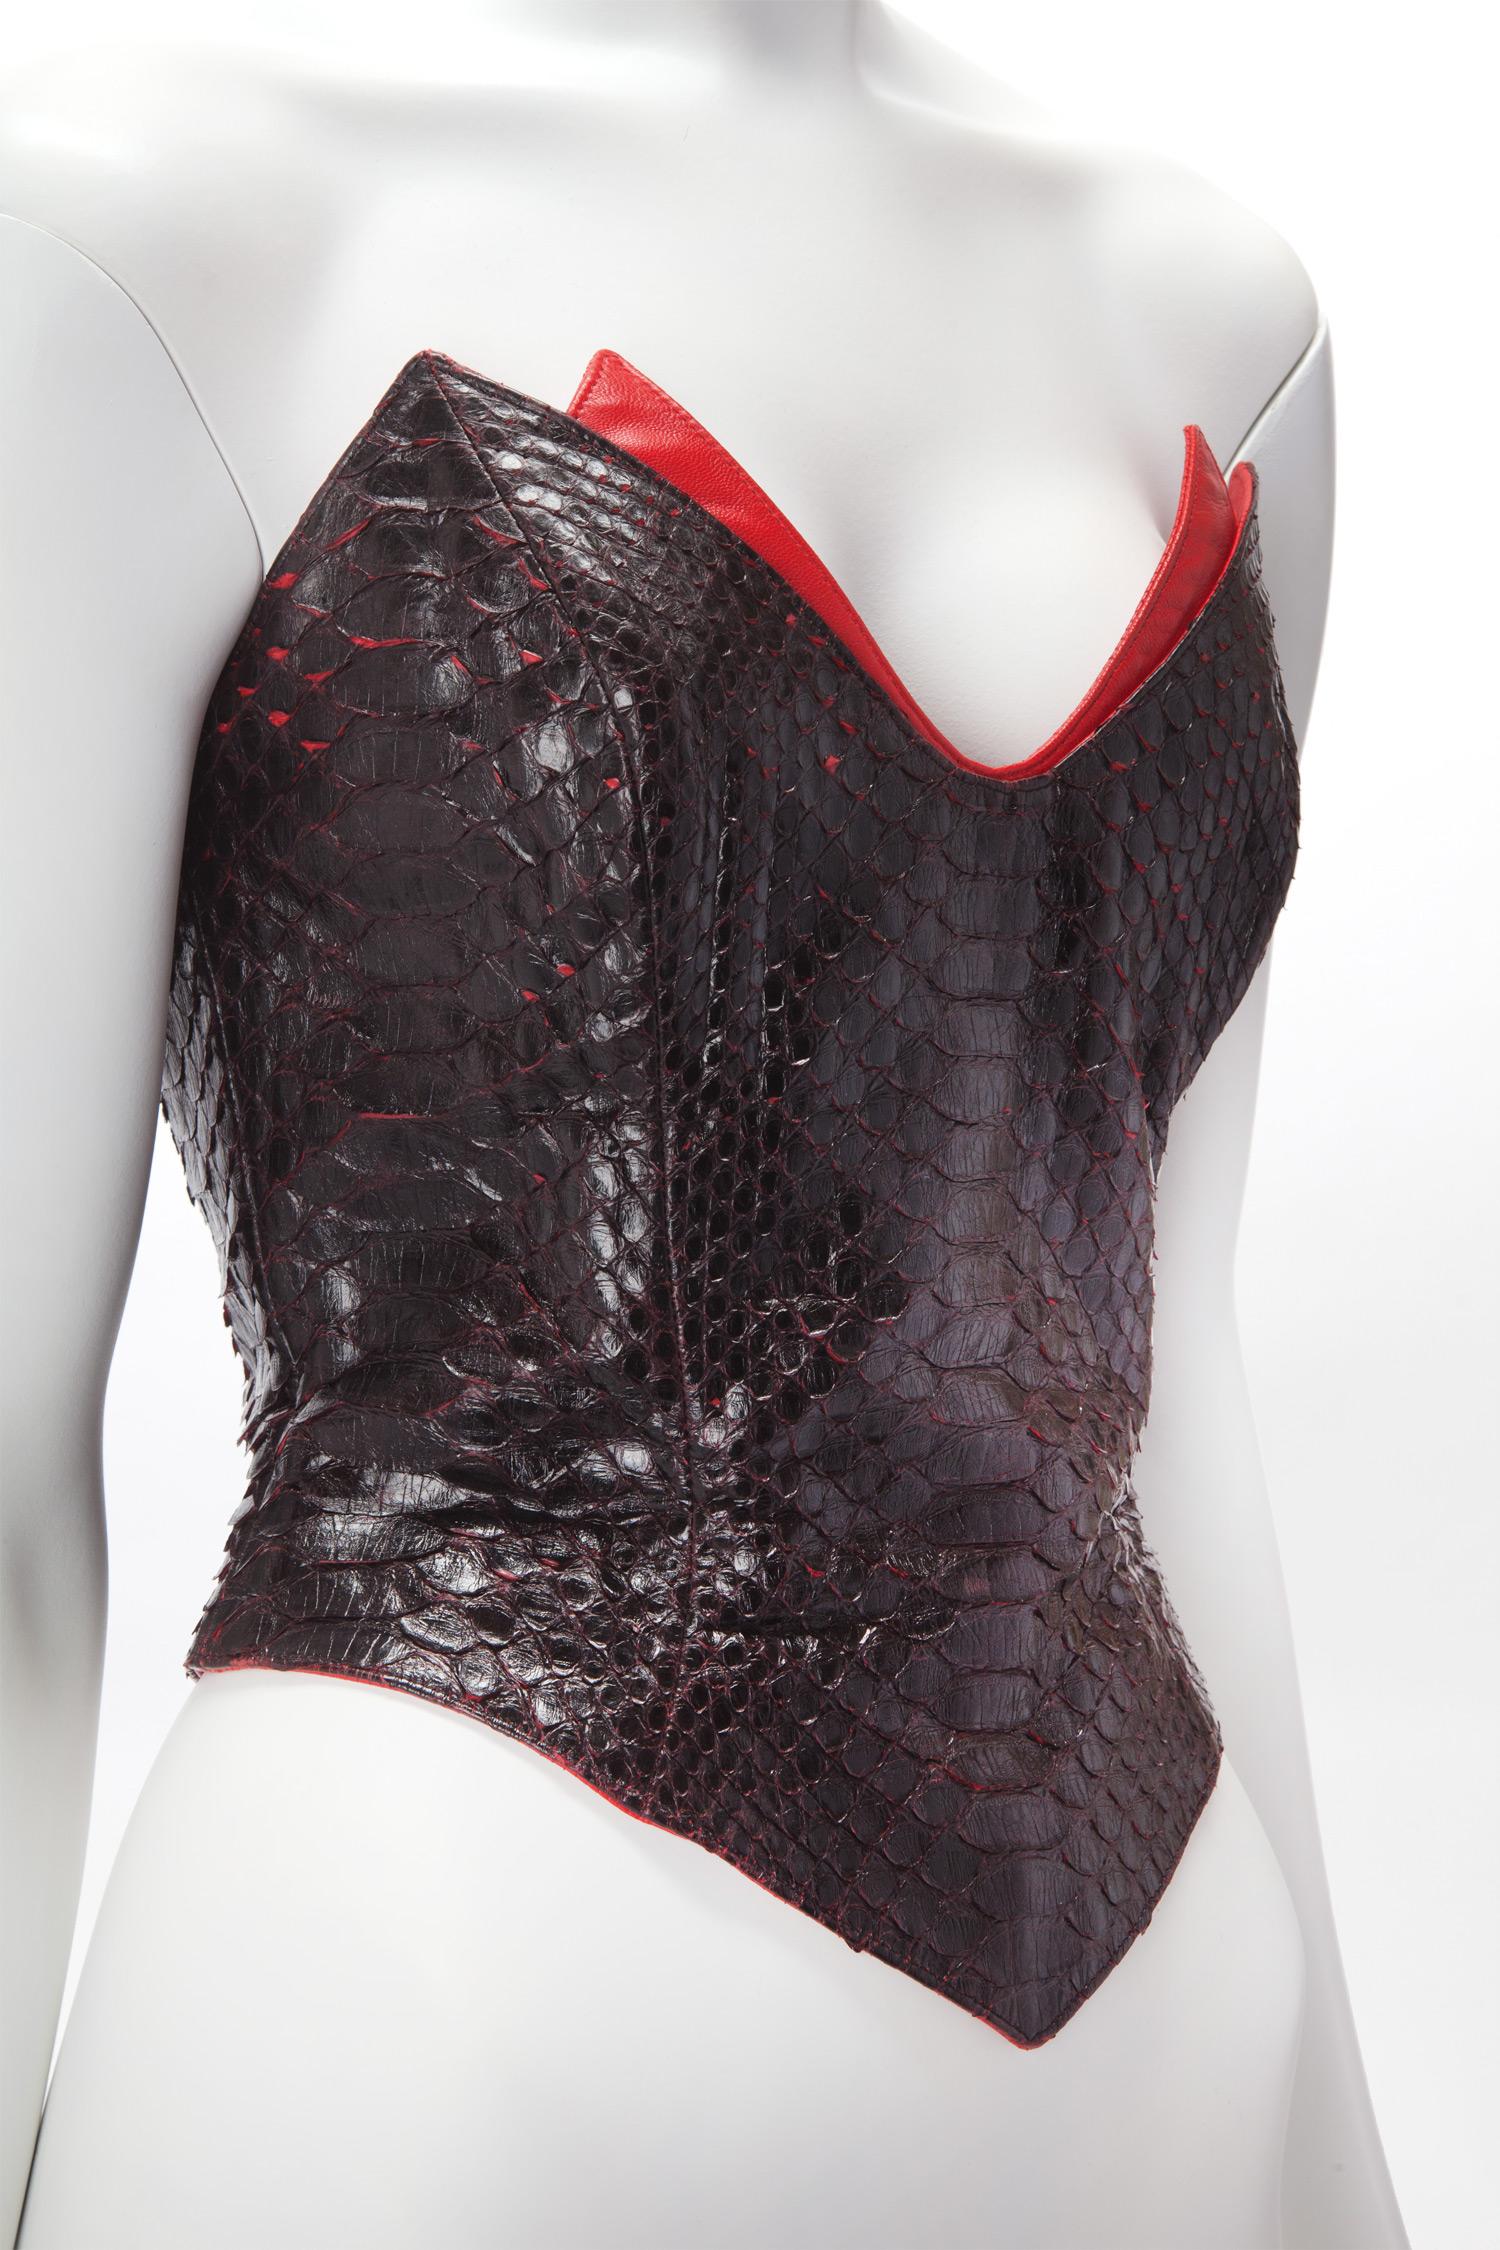 c. 1990's Thierry Mugler Couture Corset en python noir avec empiècement en cuir rouge ; corsage désossé avec doublure en satin rouge ;  Python est souple. Taille 4